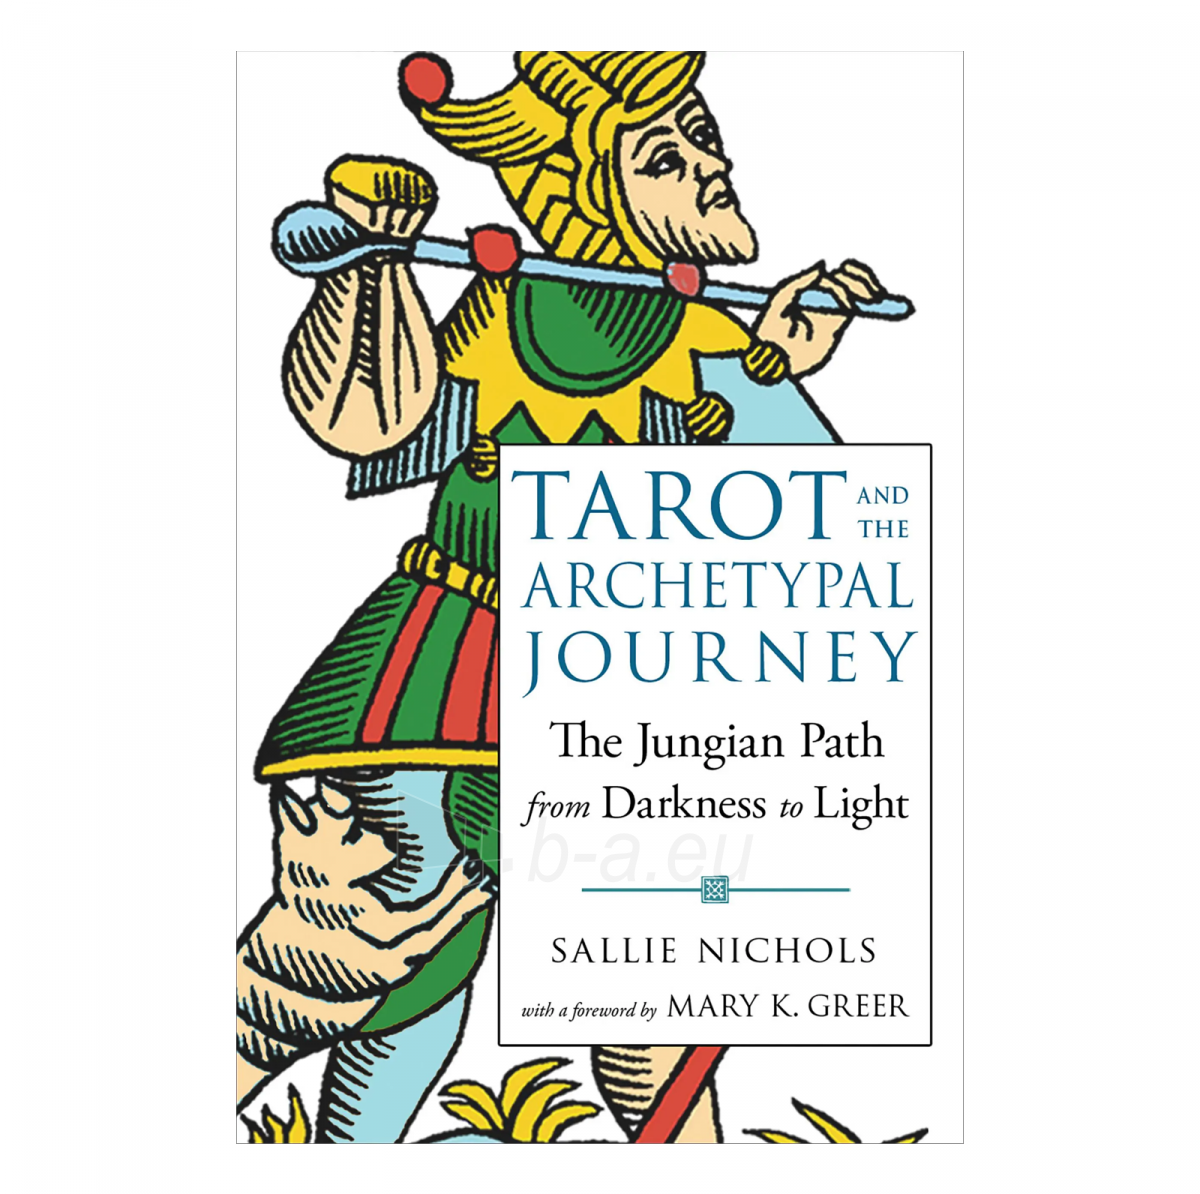 Taro kortos and the Archetypal Journey knyga Weiser Books paveikslėlis 1 iš 6